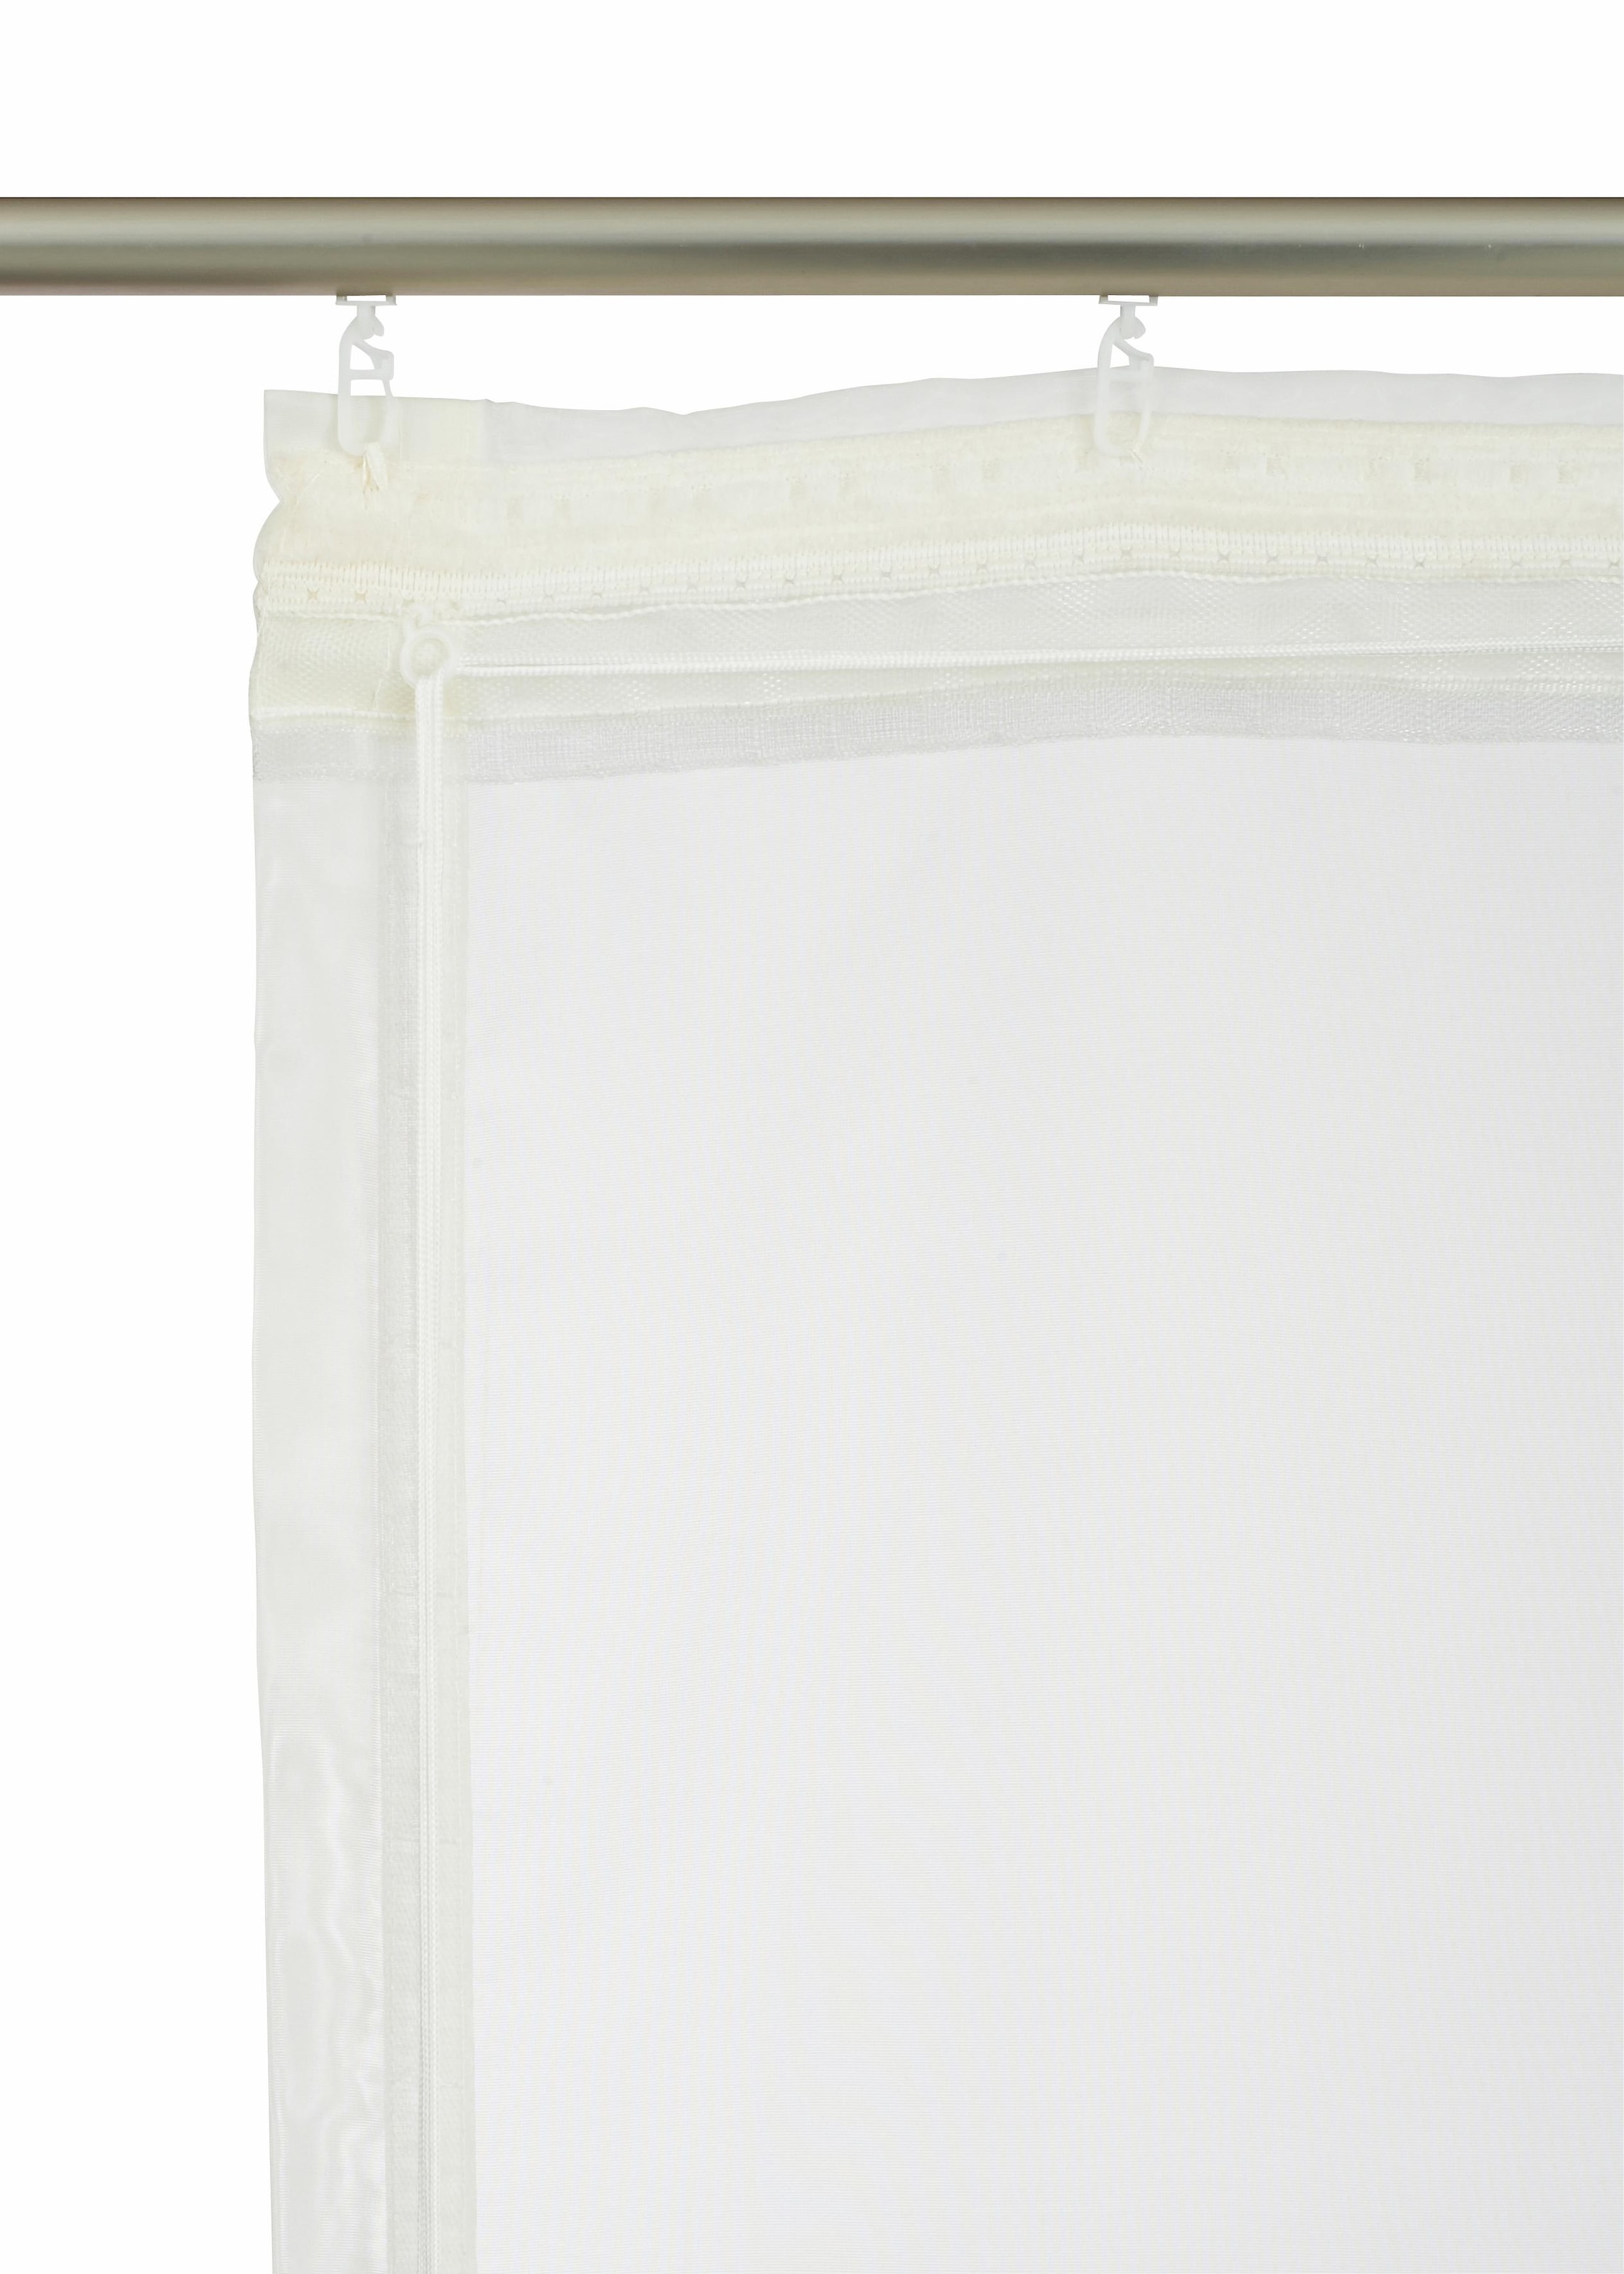 OTTO Raffrollo Transparent, home Bestickt, my kaufen mit Klettband, »Sorel«, Polyester bei